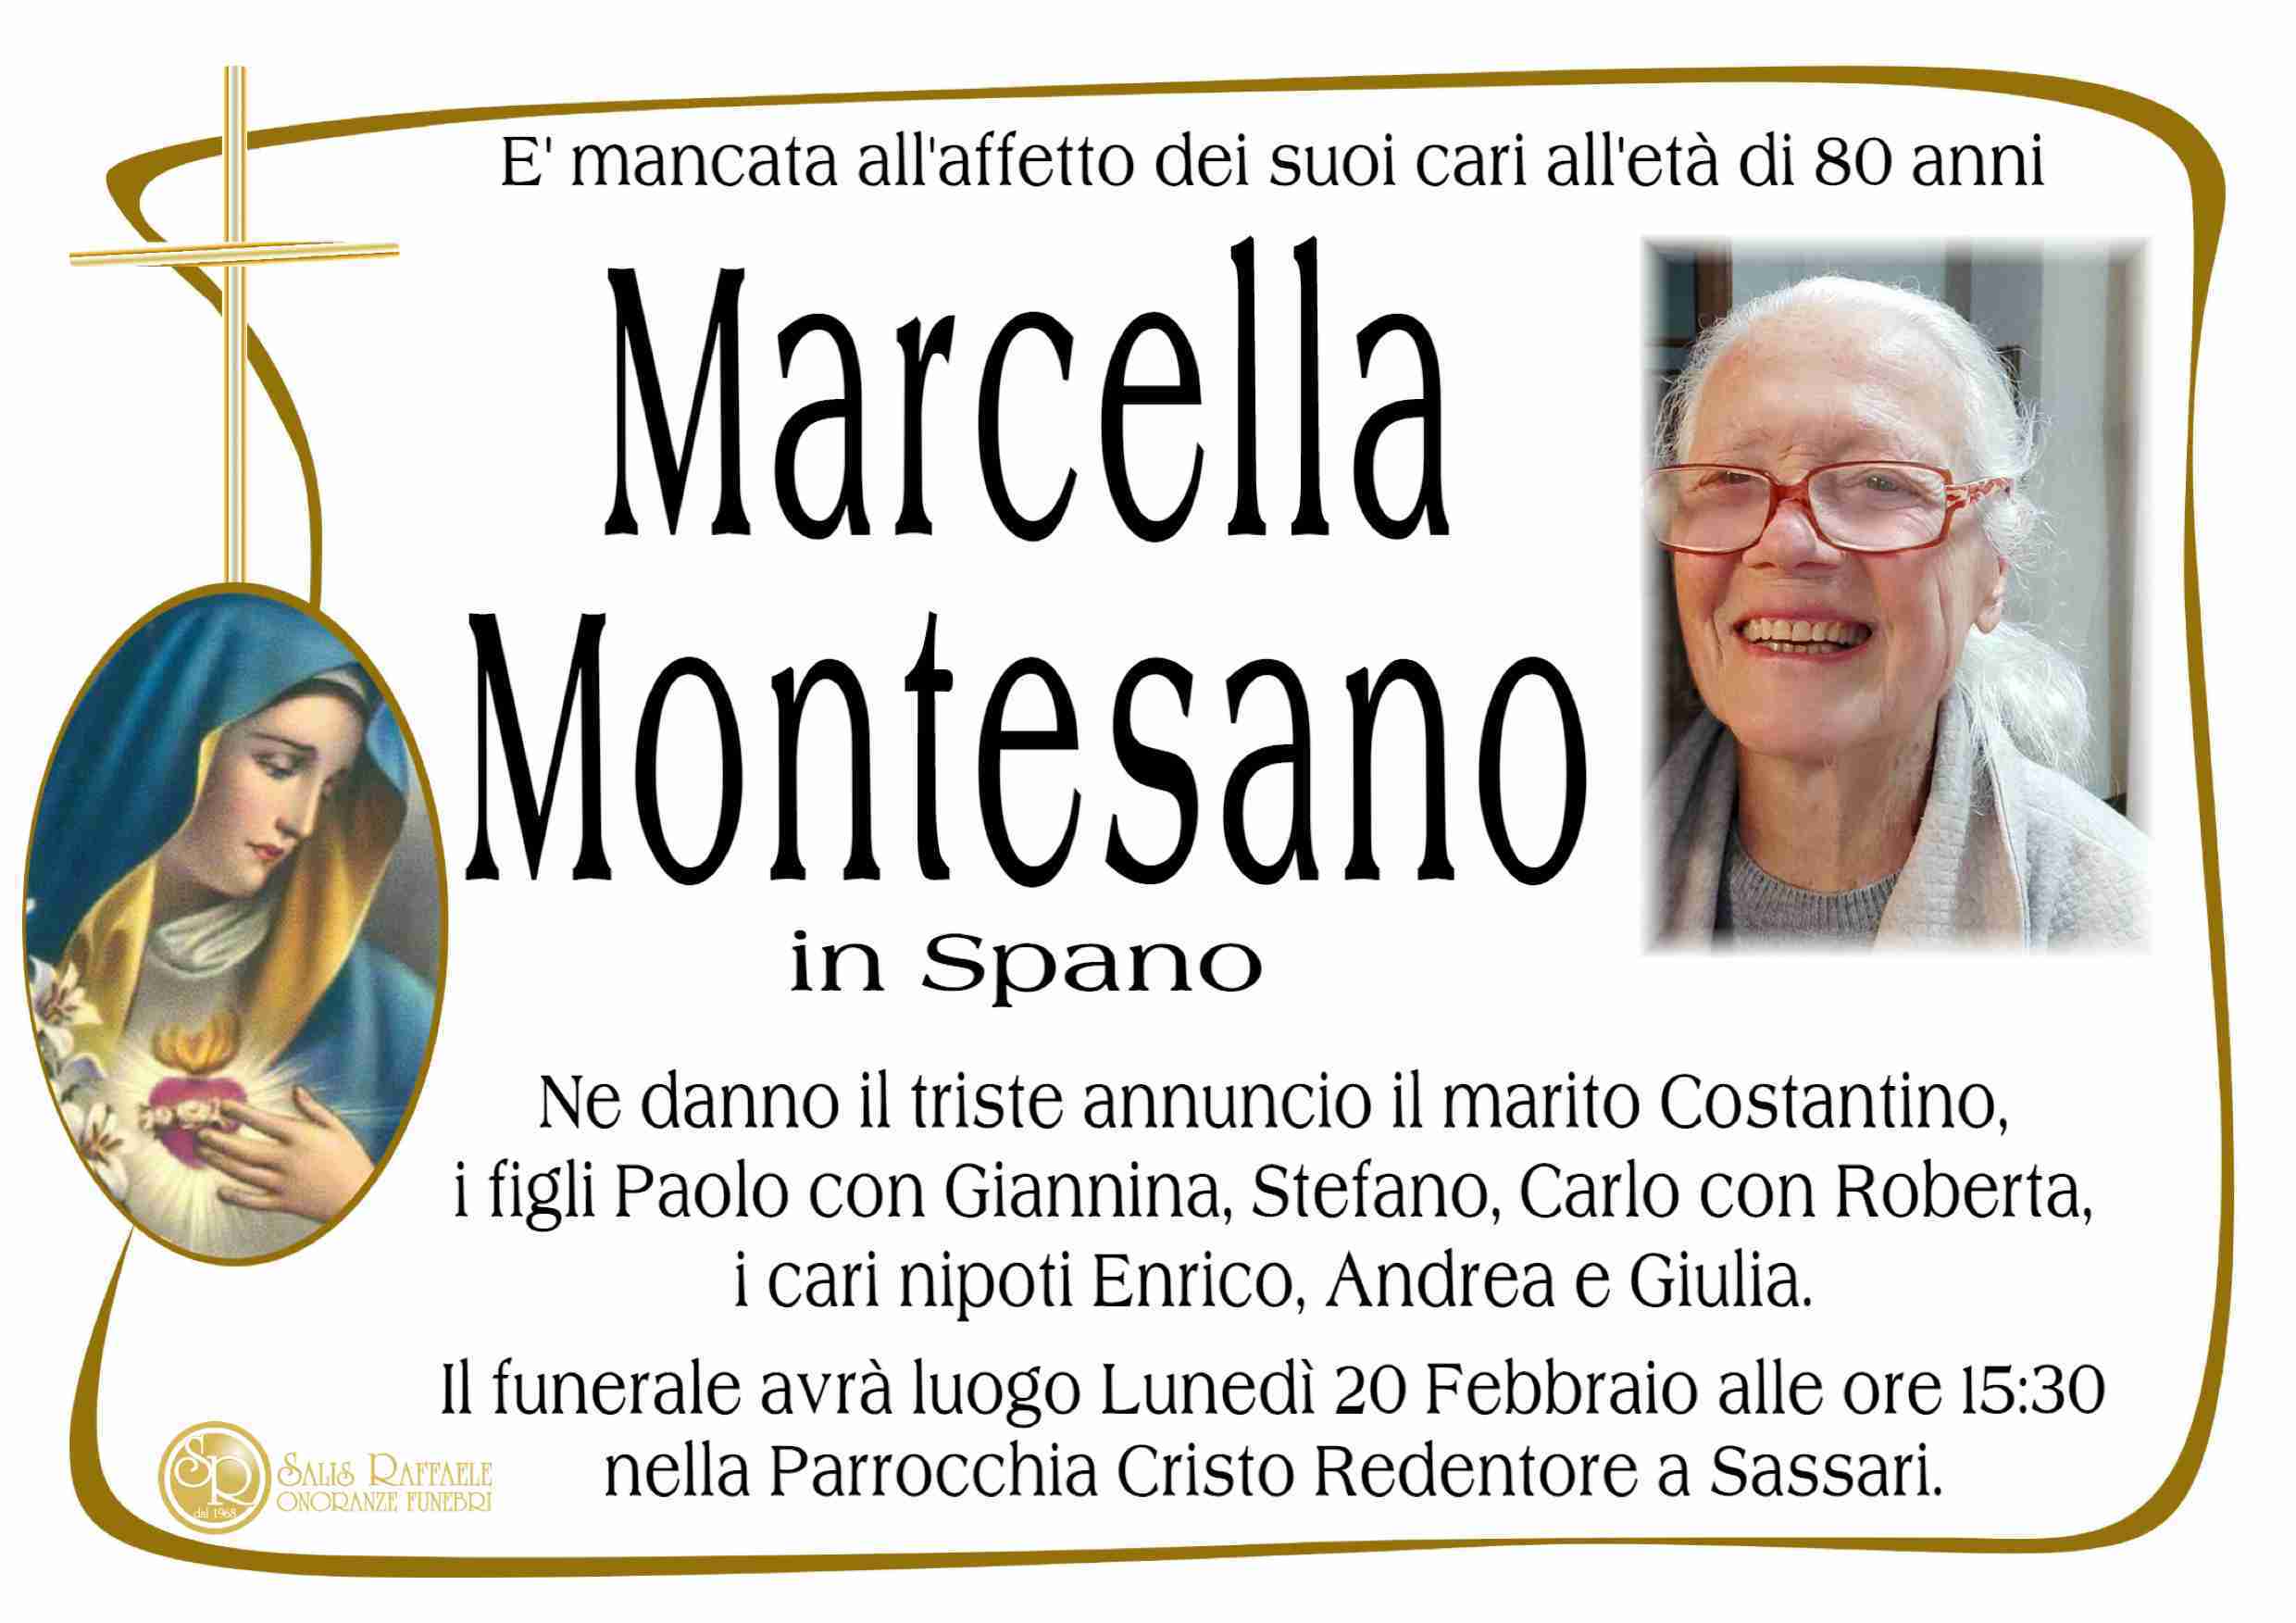 Marcella Montesano